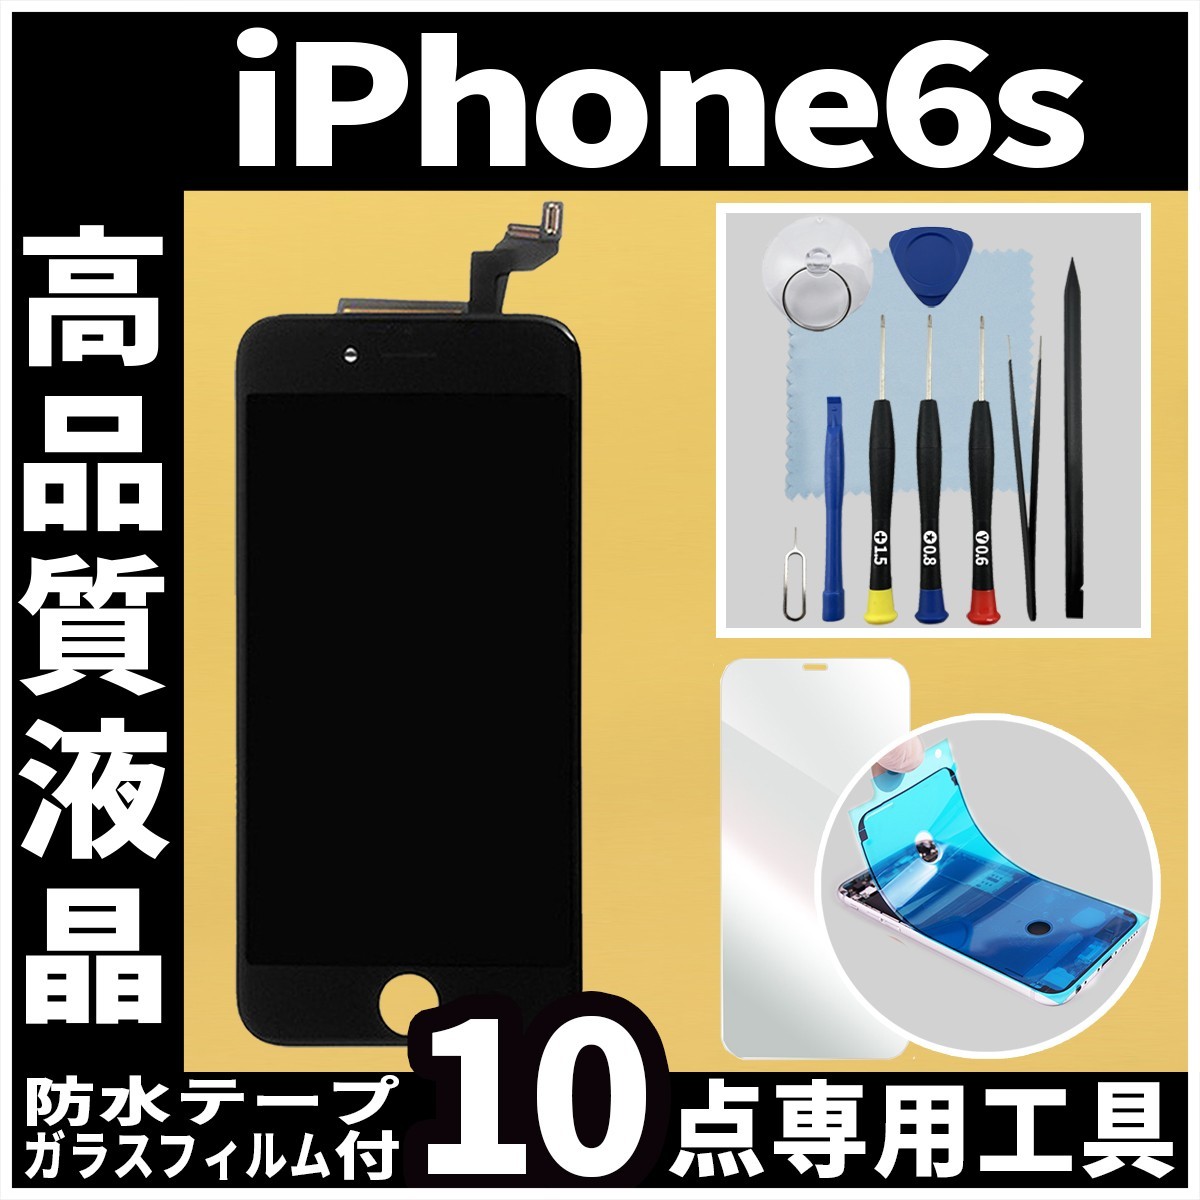 高品質液晶 iPhone6s フロントパネル 黒 高品質AAA 互換品 LCD 業者 画面割れ 液晶 iphone 修理 ガラス割れ 交換 防水テープ_画像1